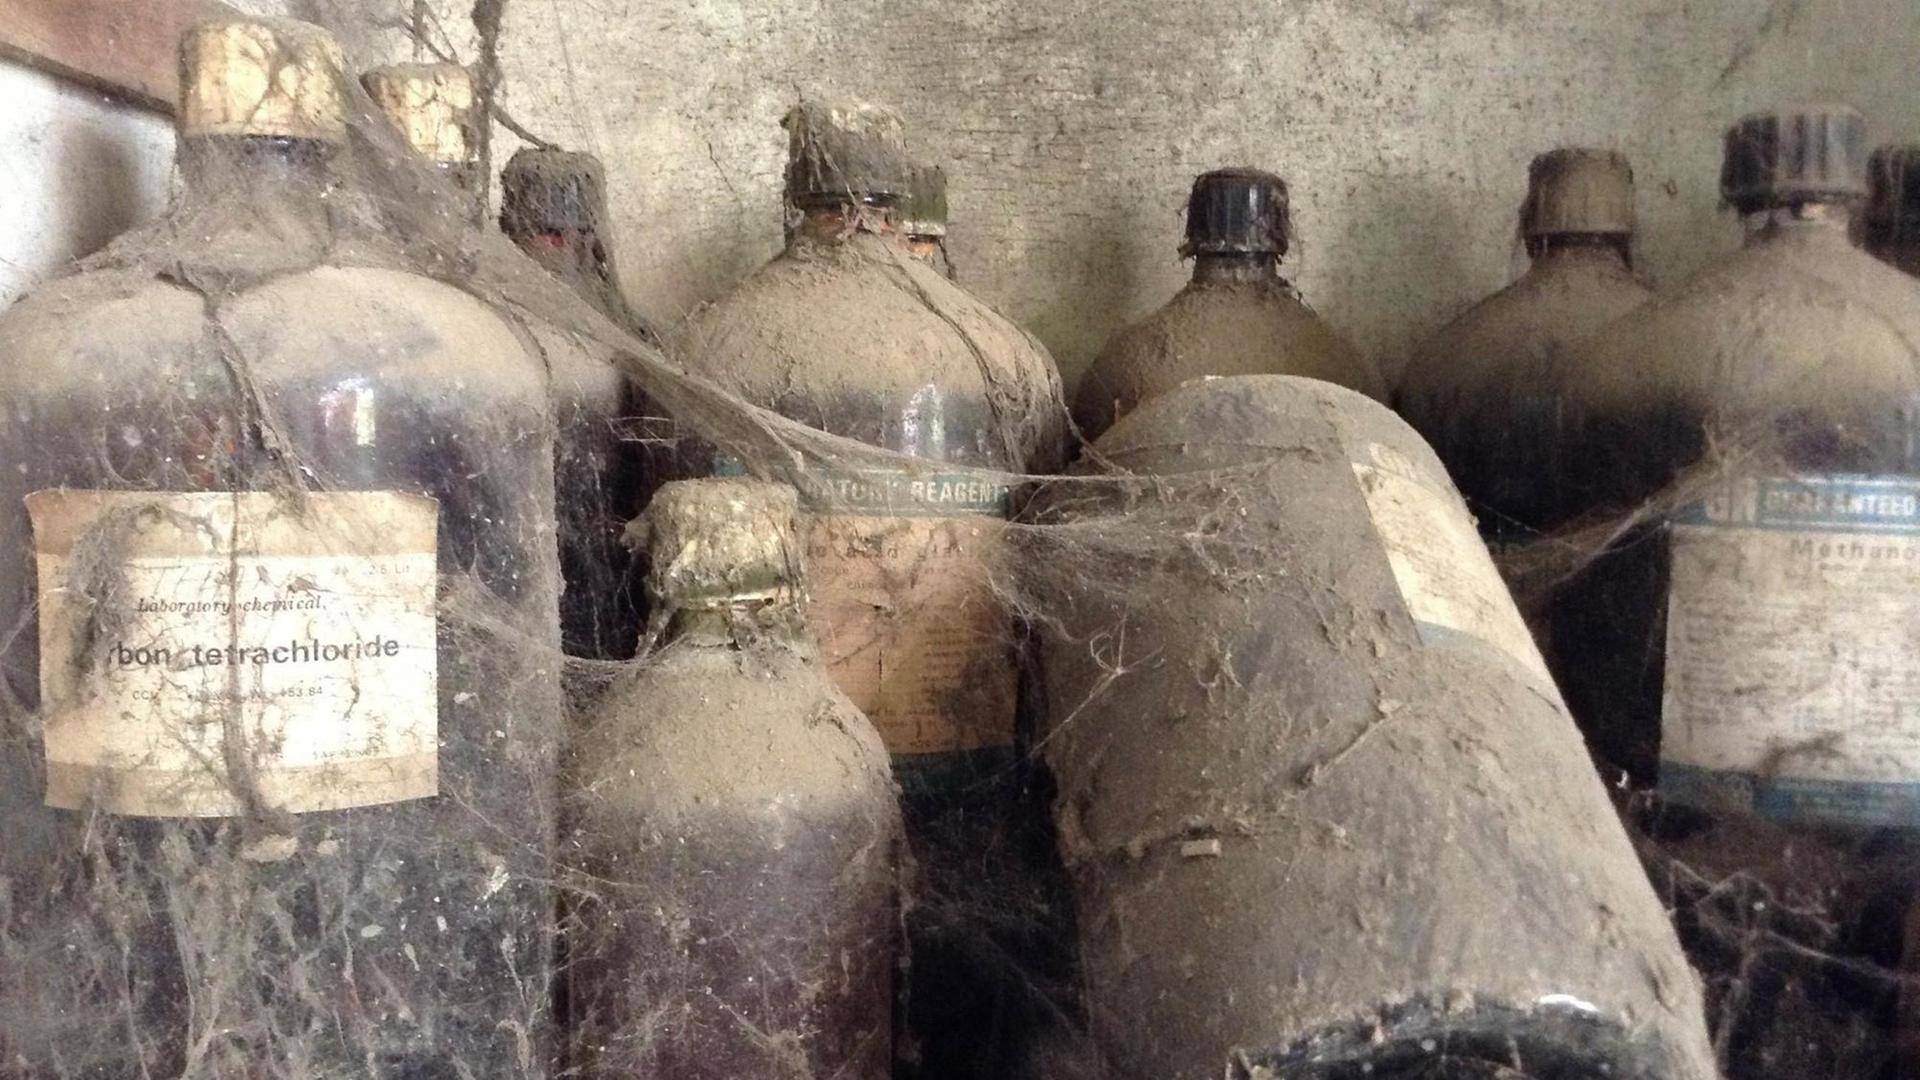 Verstaubte Behälter für Chemikalien stehen in der verlassenen Gasfabrik von Union Carbide (heute Dow Chemicals), aus der 1984 tödliches Gas entwich und zwischen 3.000 bis 25.000 Menschen tötete.